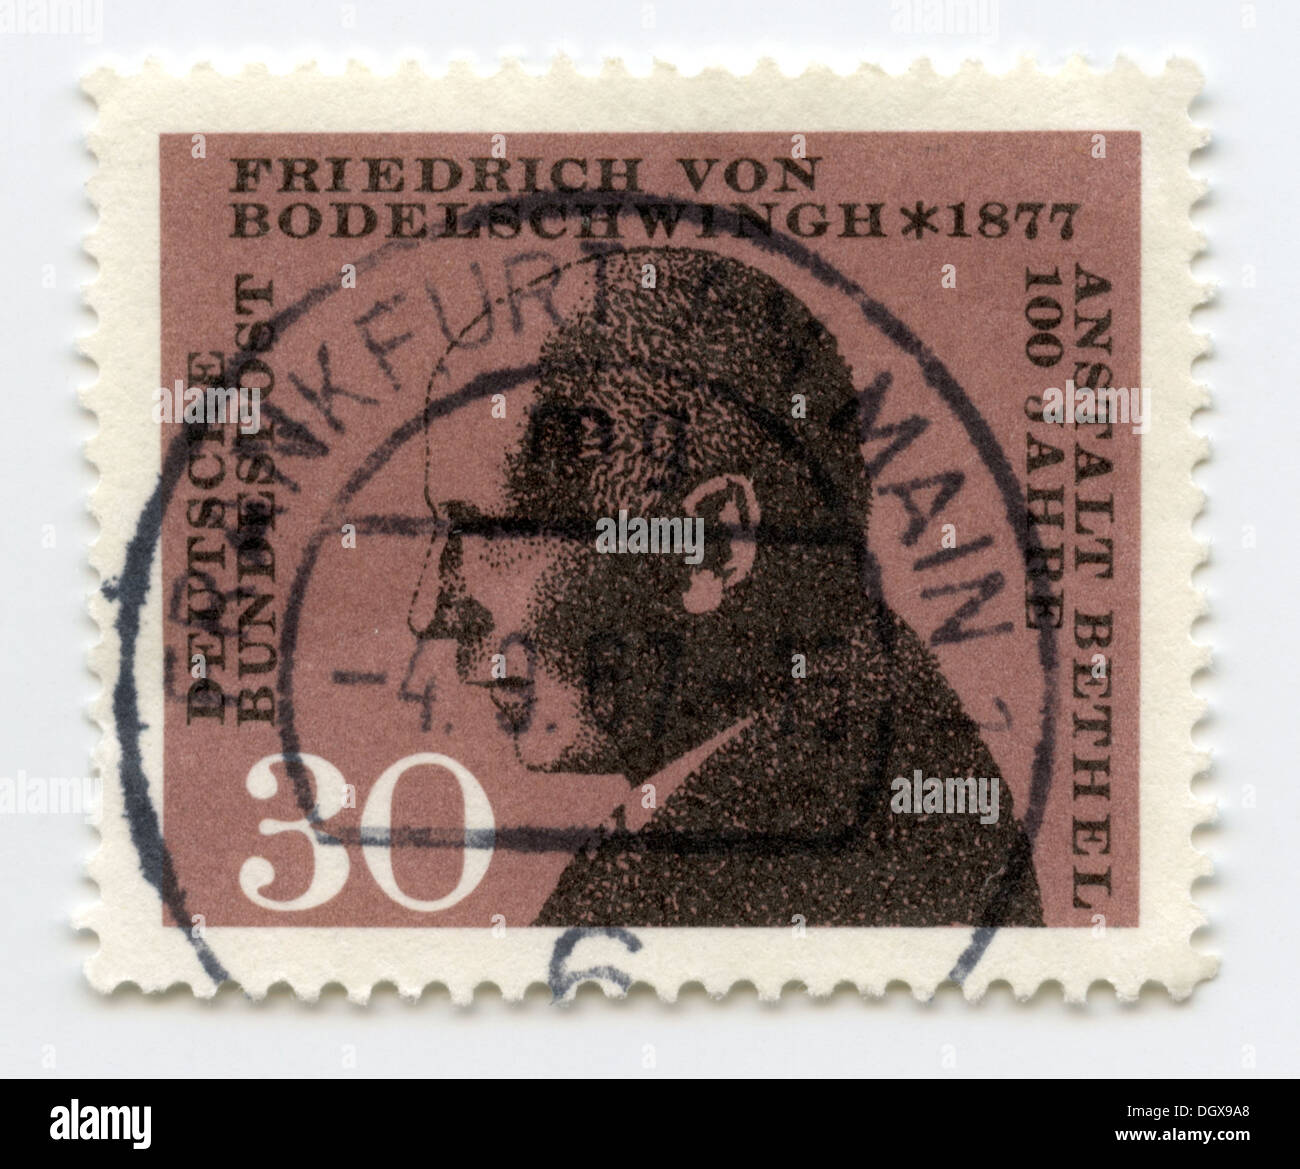 Allemagne timbre-poste représentant Friedrich von Bodelschwingh, le théologien allemand et défenseur de la santé publique Banque D'Images